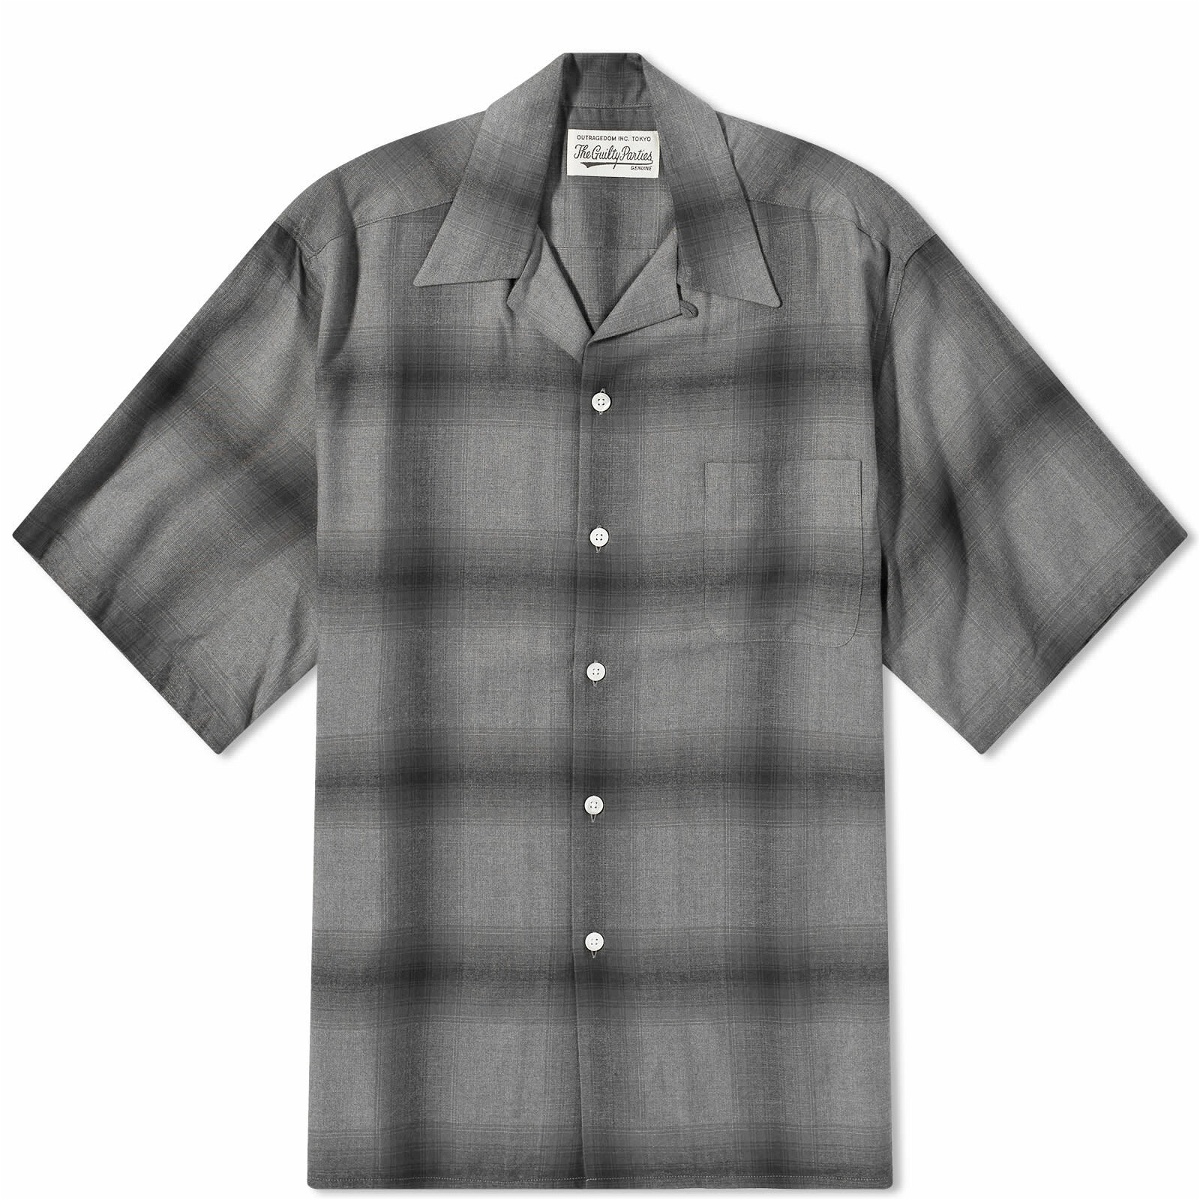 Wacko Maria Men's Short Sleeve Type 2 Ombre Check Open Collar Shir